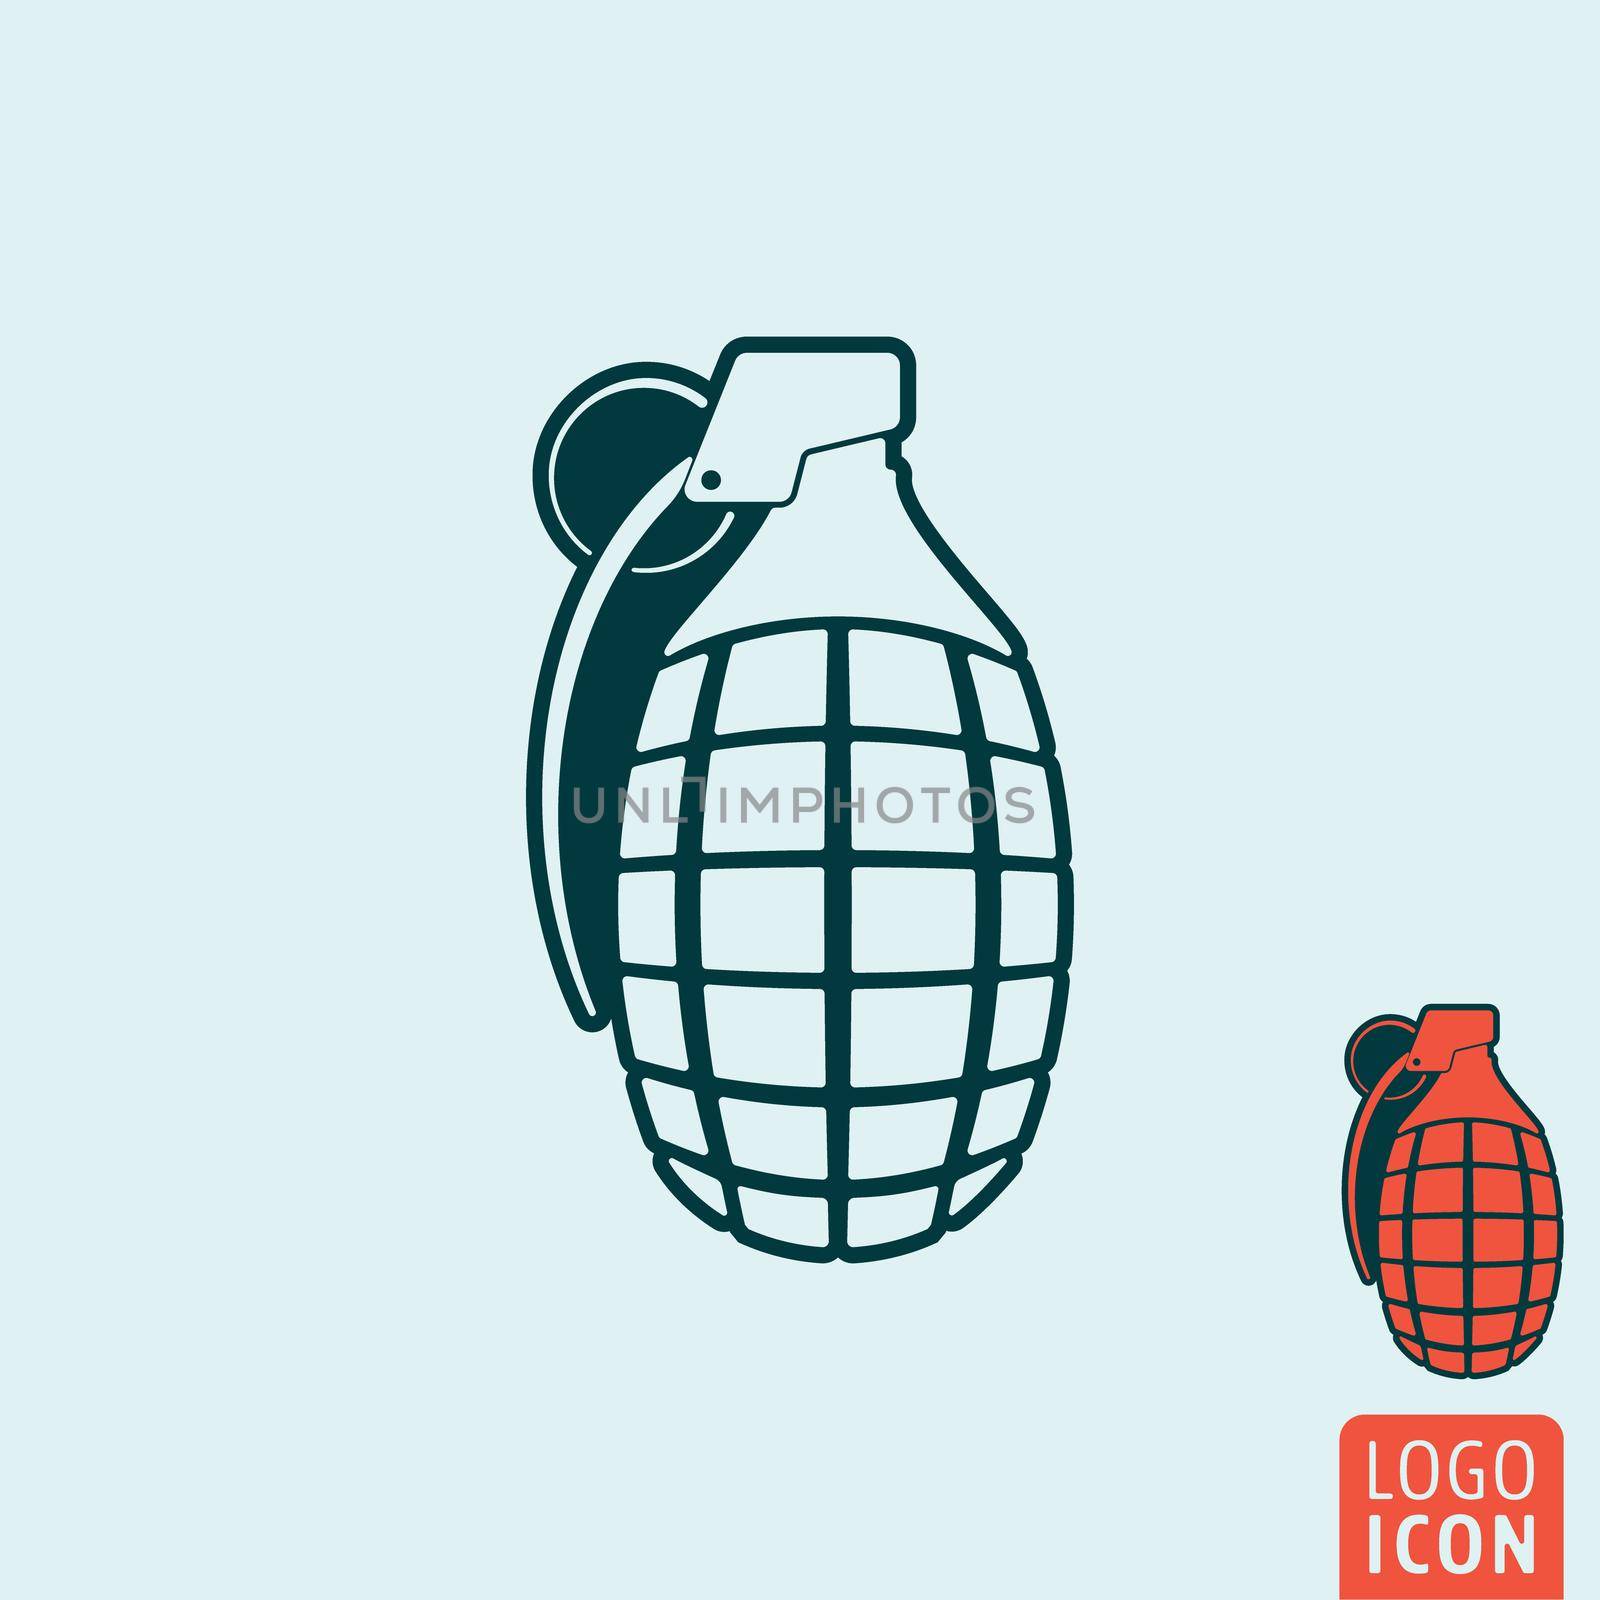 Granade icon. Granade symbol. Grenade icon isolated. Vector illustration